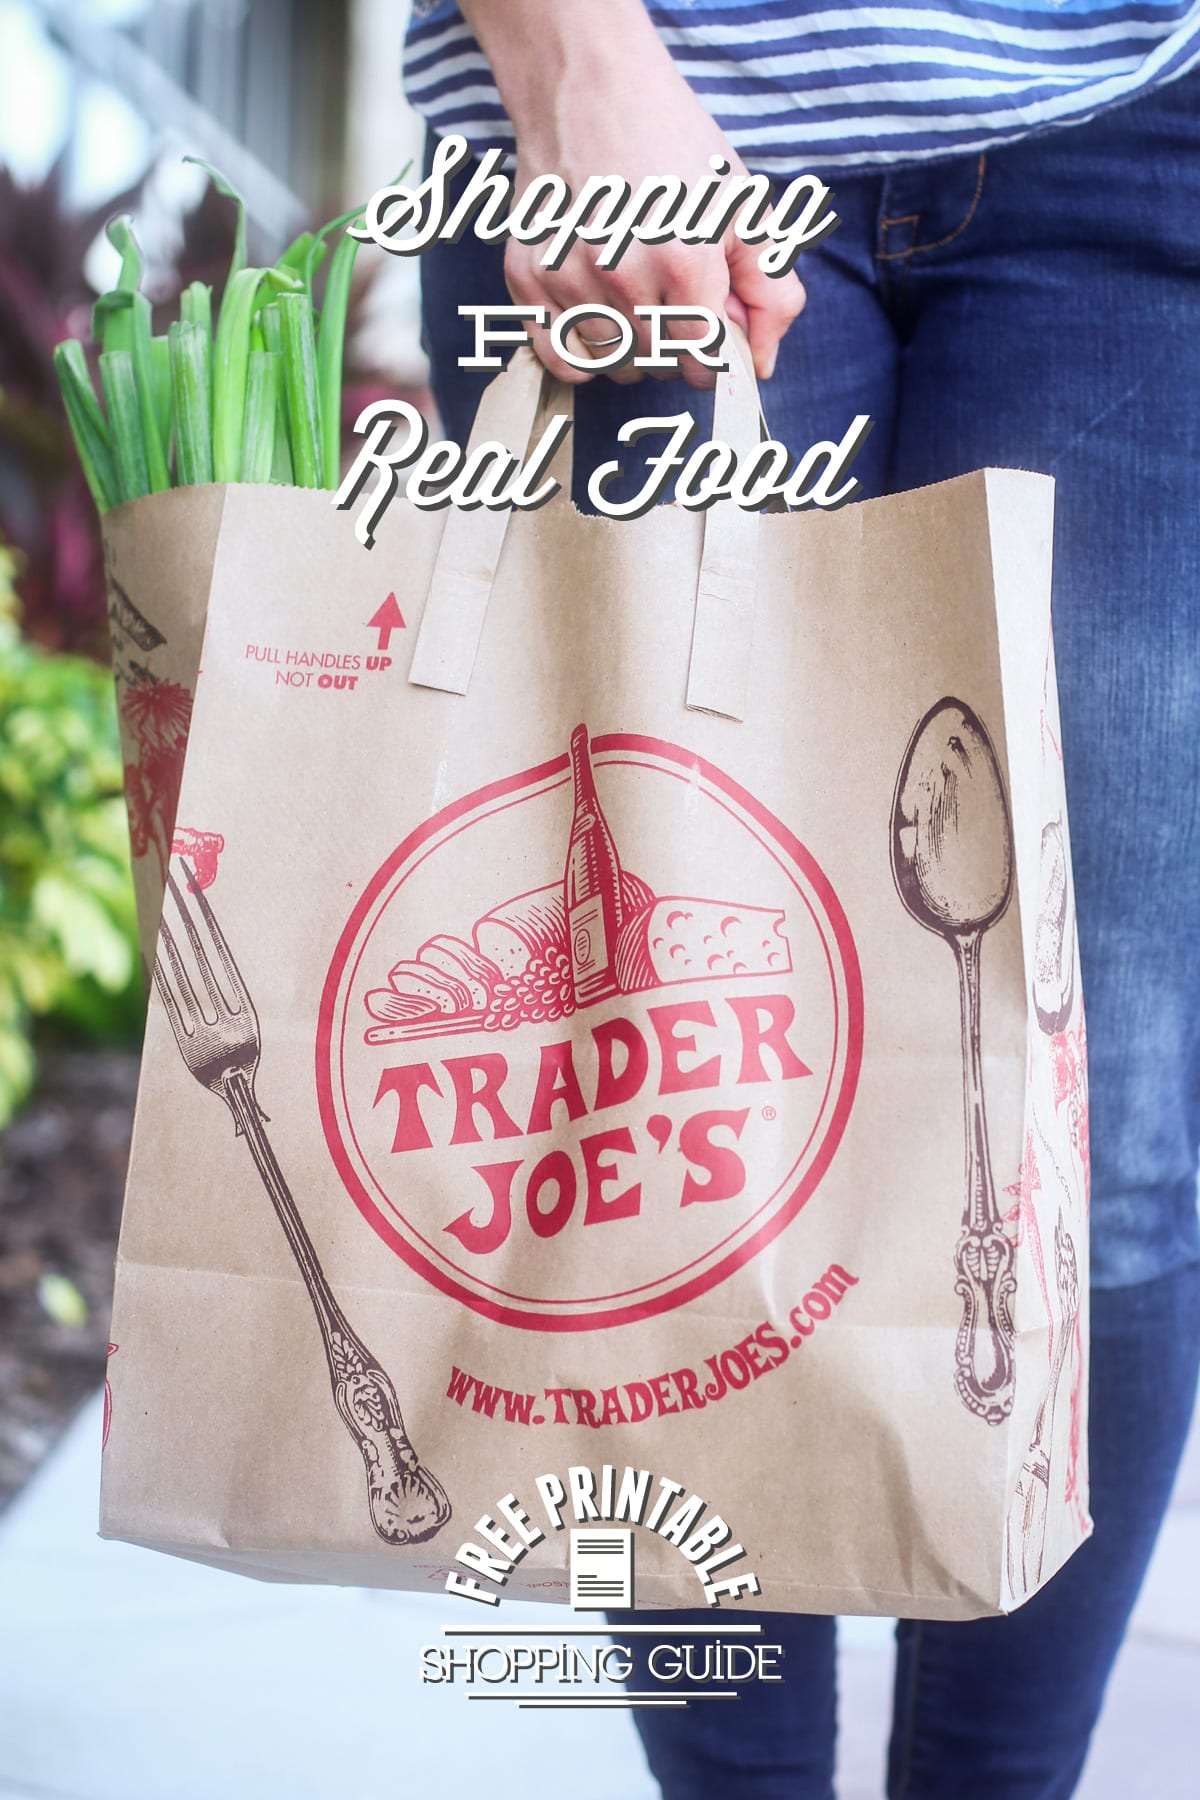 Shopping for Real Food at Trader Joe’s: My Top Picks + Printable Shopping Guide